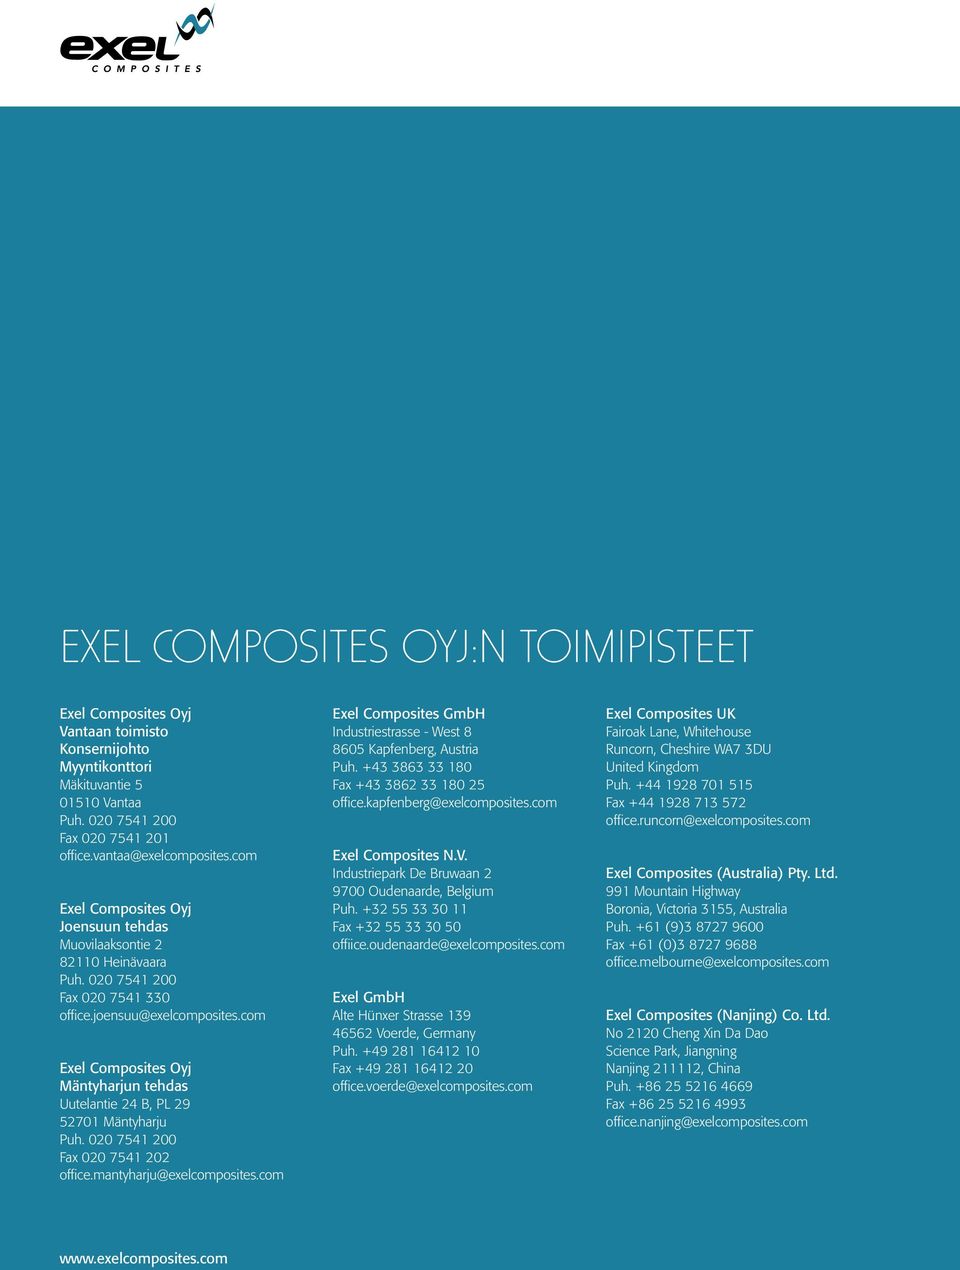 com Exel Composites Oyj Mäntyharjun tehdas Uutelantie 24 B, PL 29 52701 Mäntyharju Puh. 020 7541 200 Fax 020 7541 202 office.mantyharju@exelcomposites.